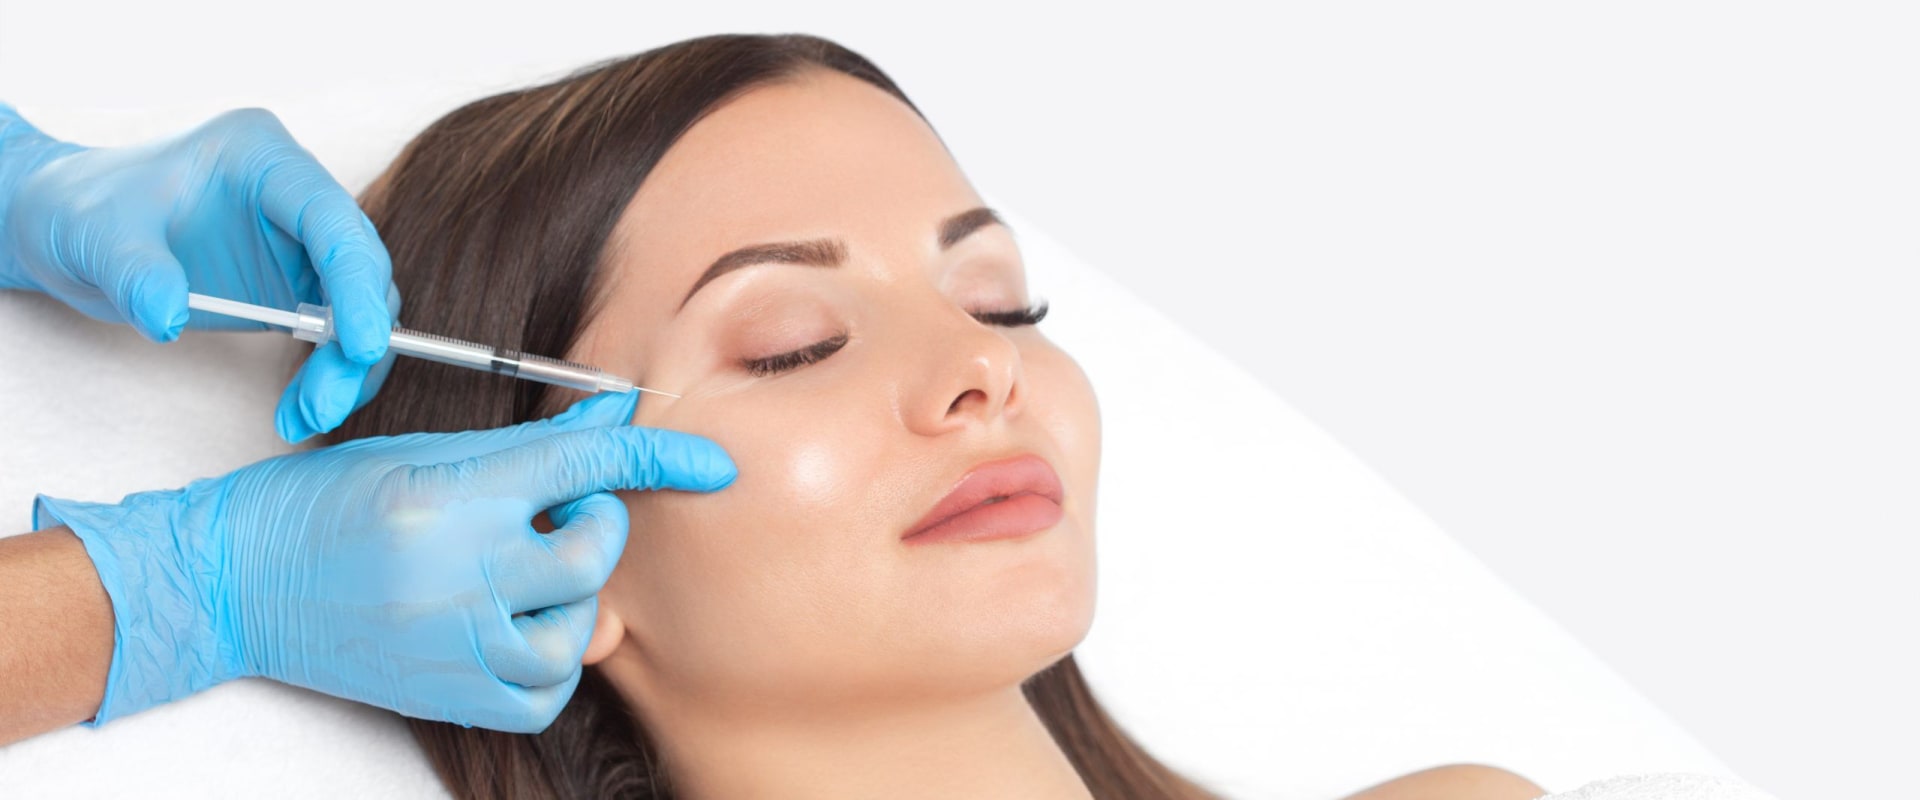 Skin Verse Medical Spa Beverly Hills - Laser Hair Removal Medspa and Injectables on Juvederm Filler